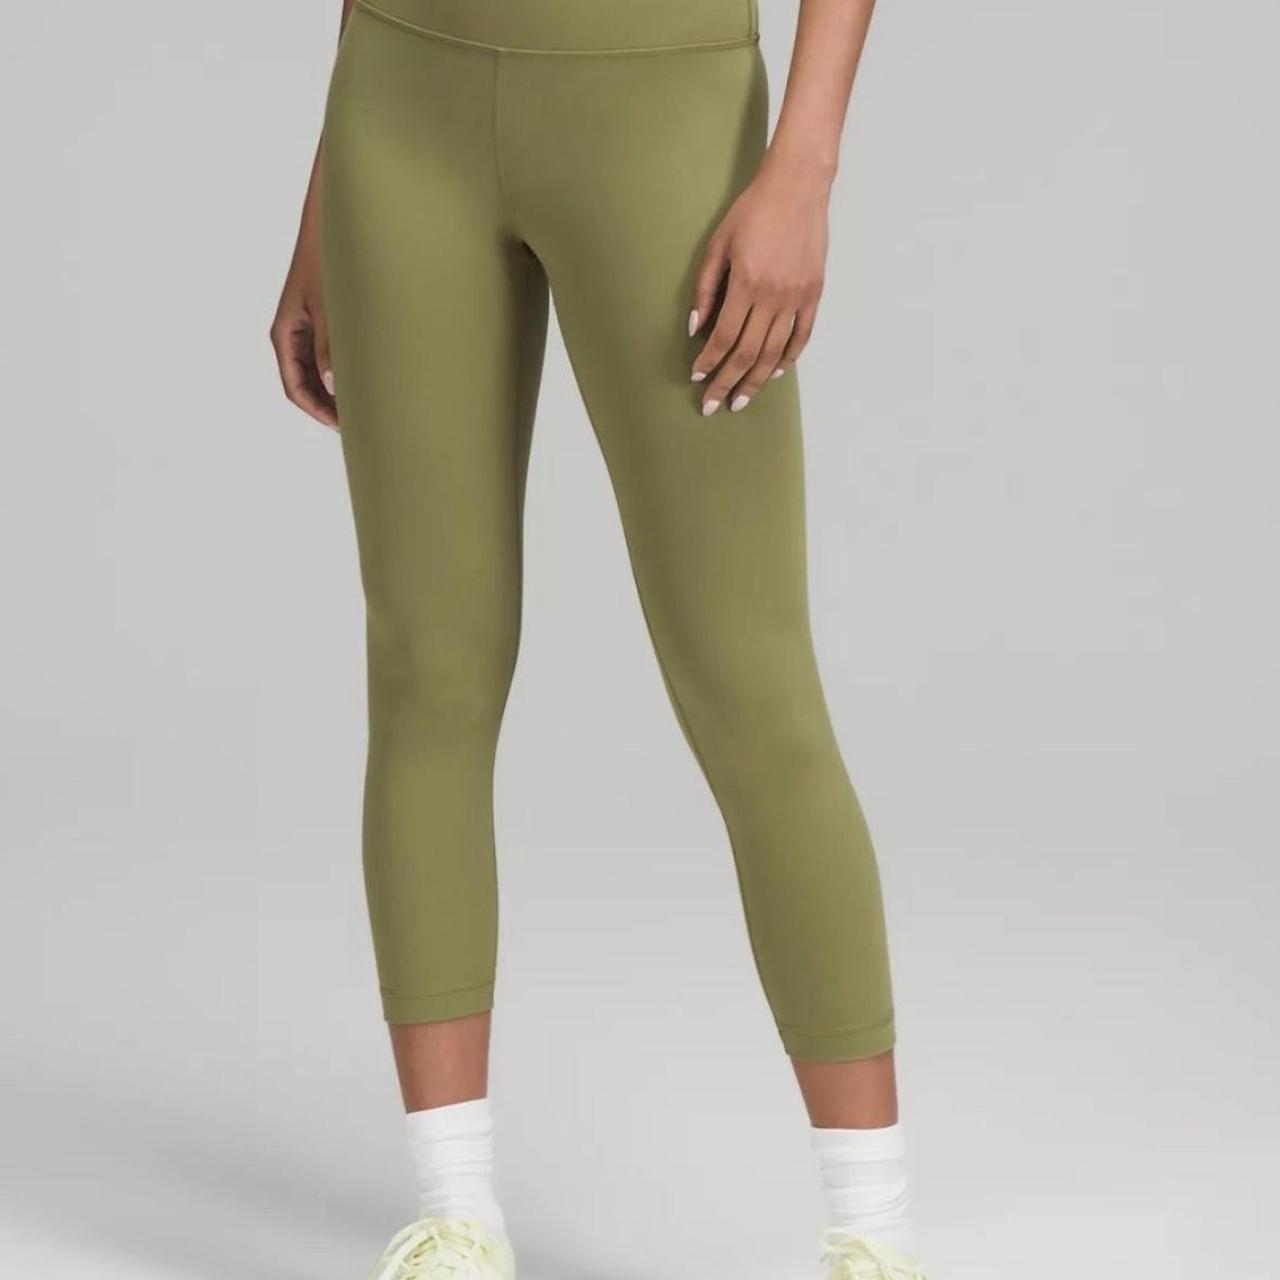 Green align leggings in a size 2 25 in inseam In - Depop